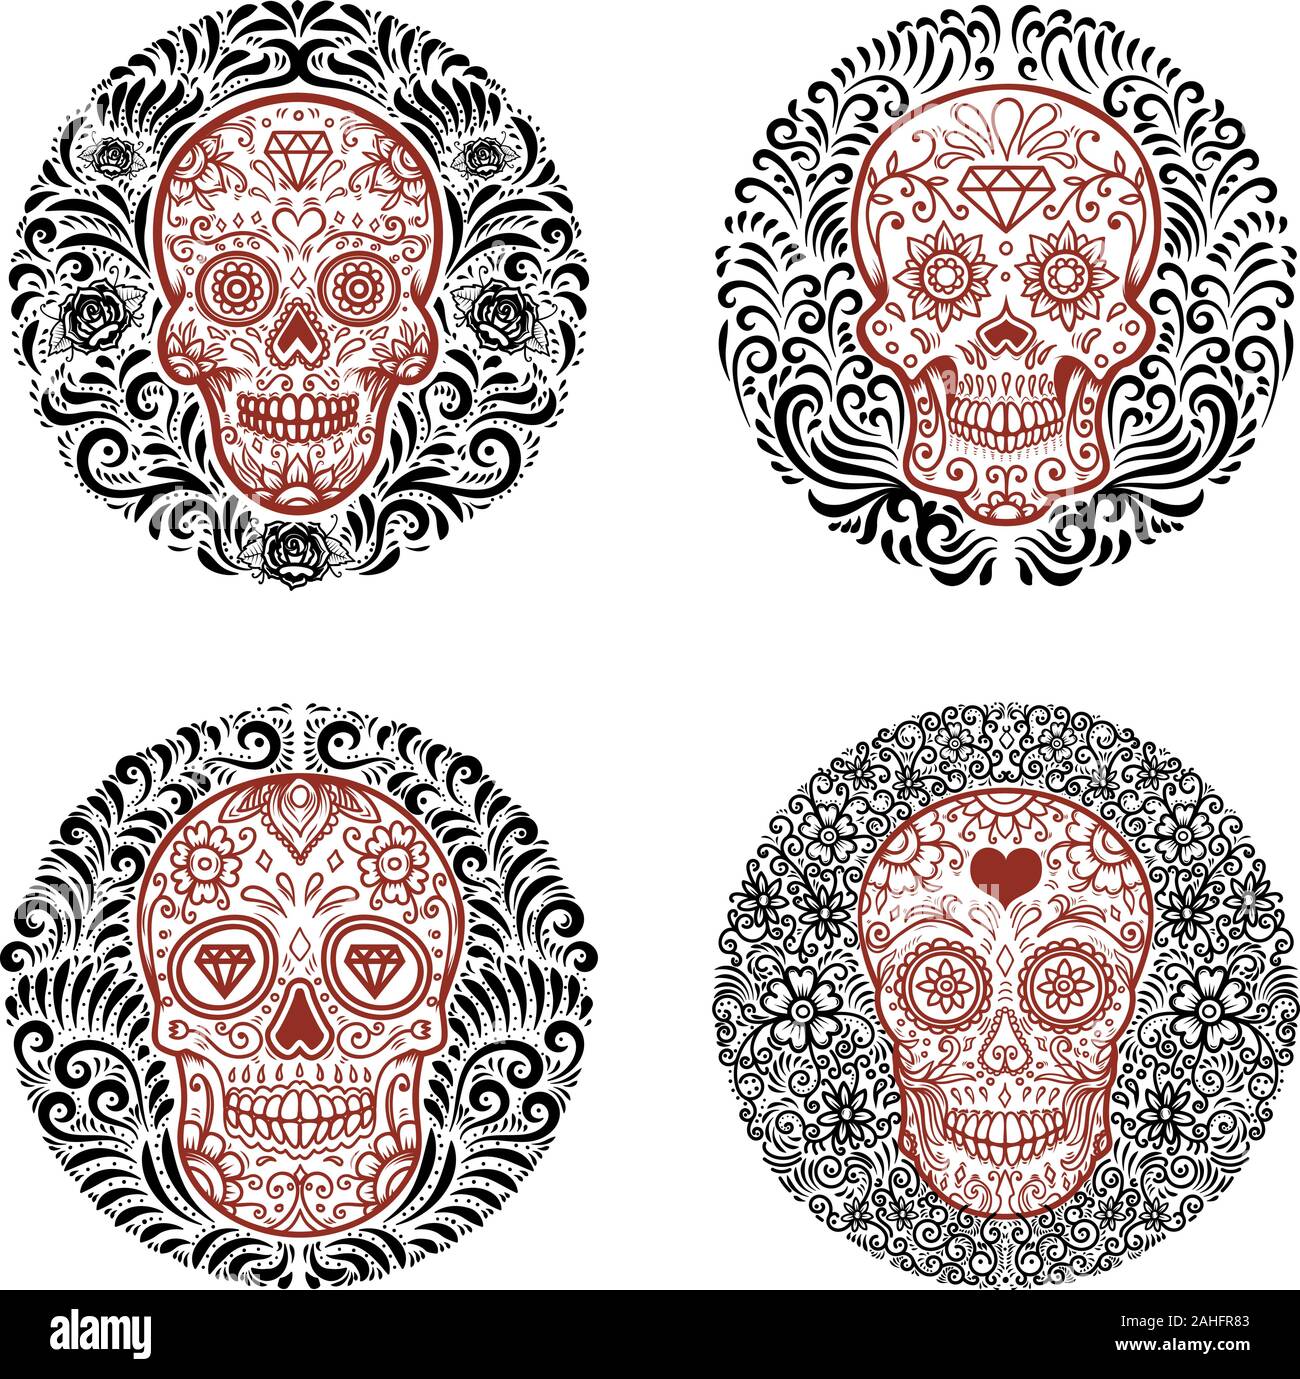 Set of emblems with sugar skulls with floral border. Design element for poster, card, emblem, sign. Vector illustration Stock Vector